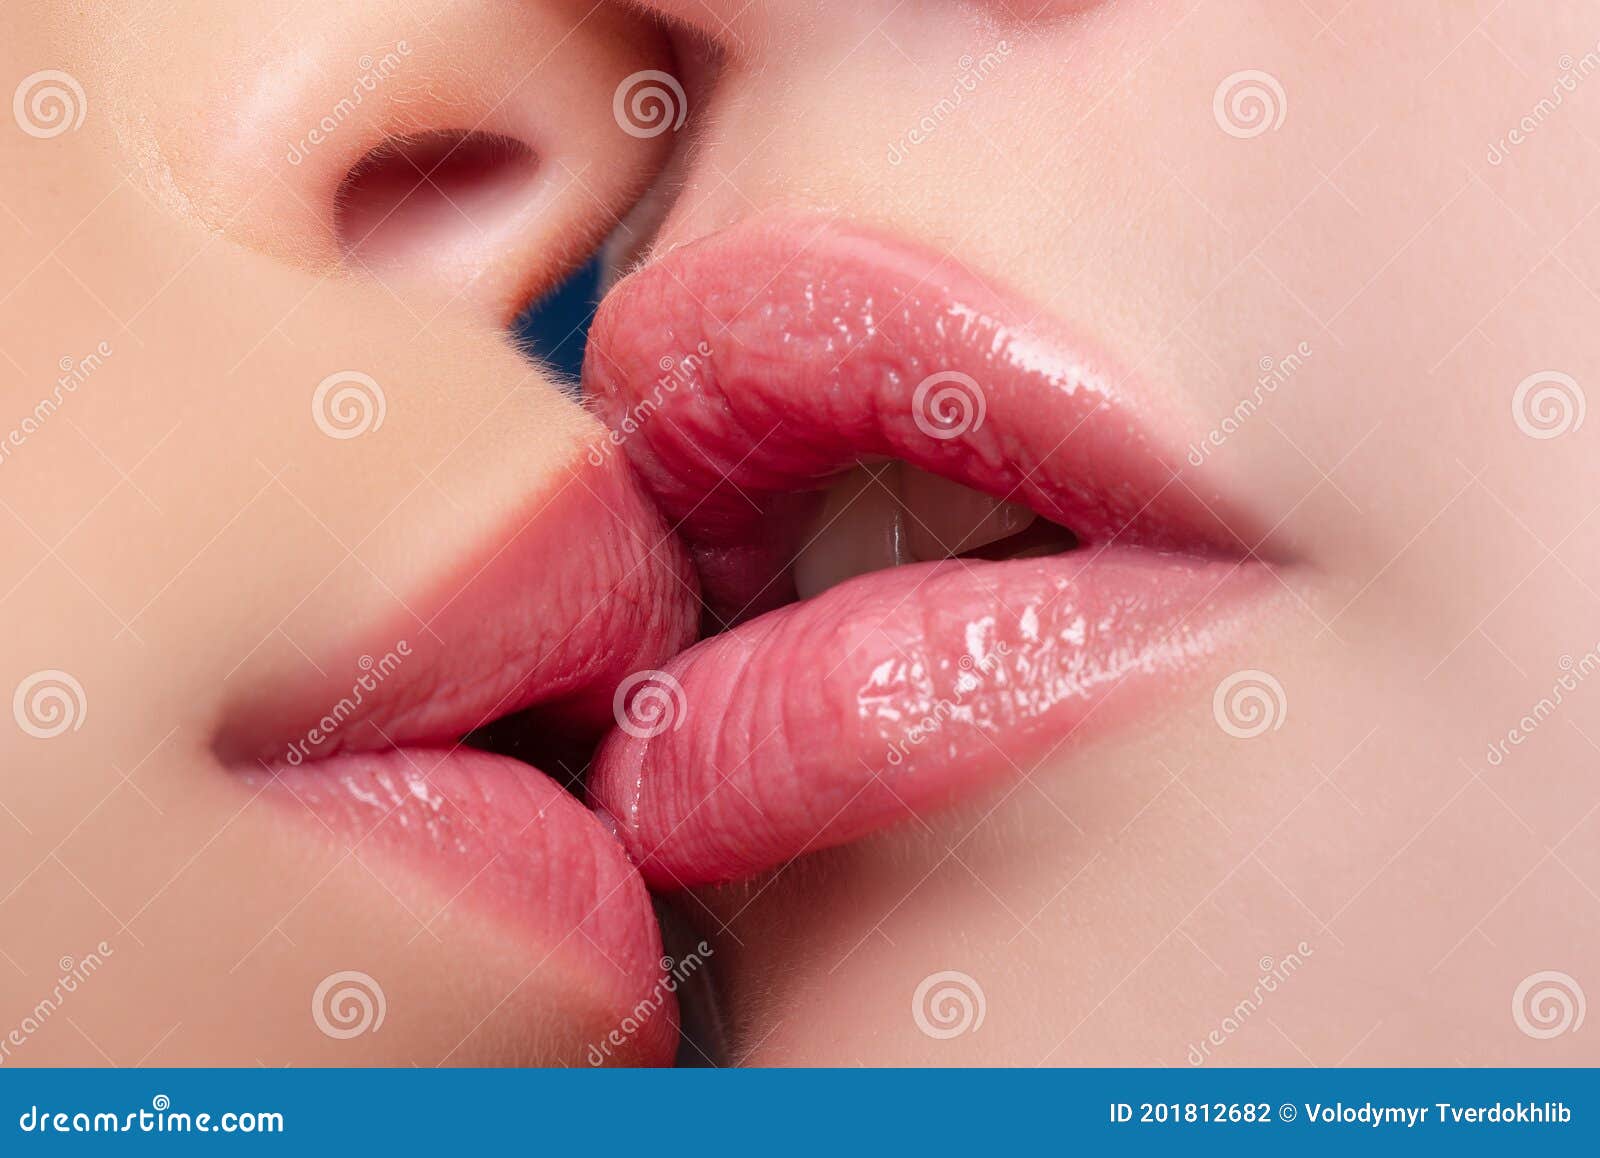 лесби целуются в губы фото 25